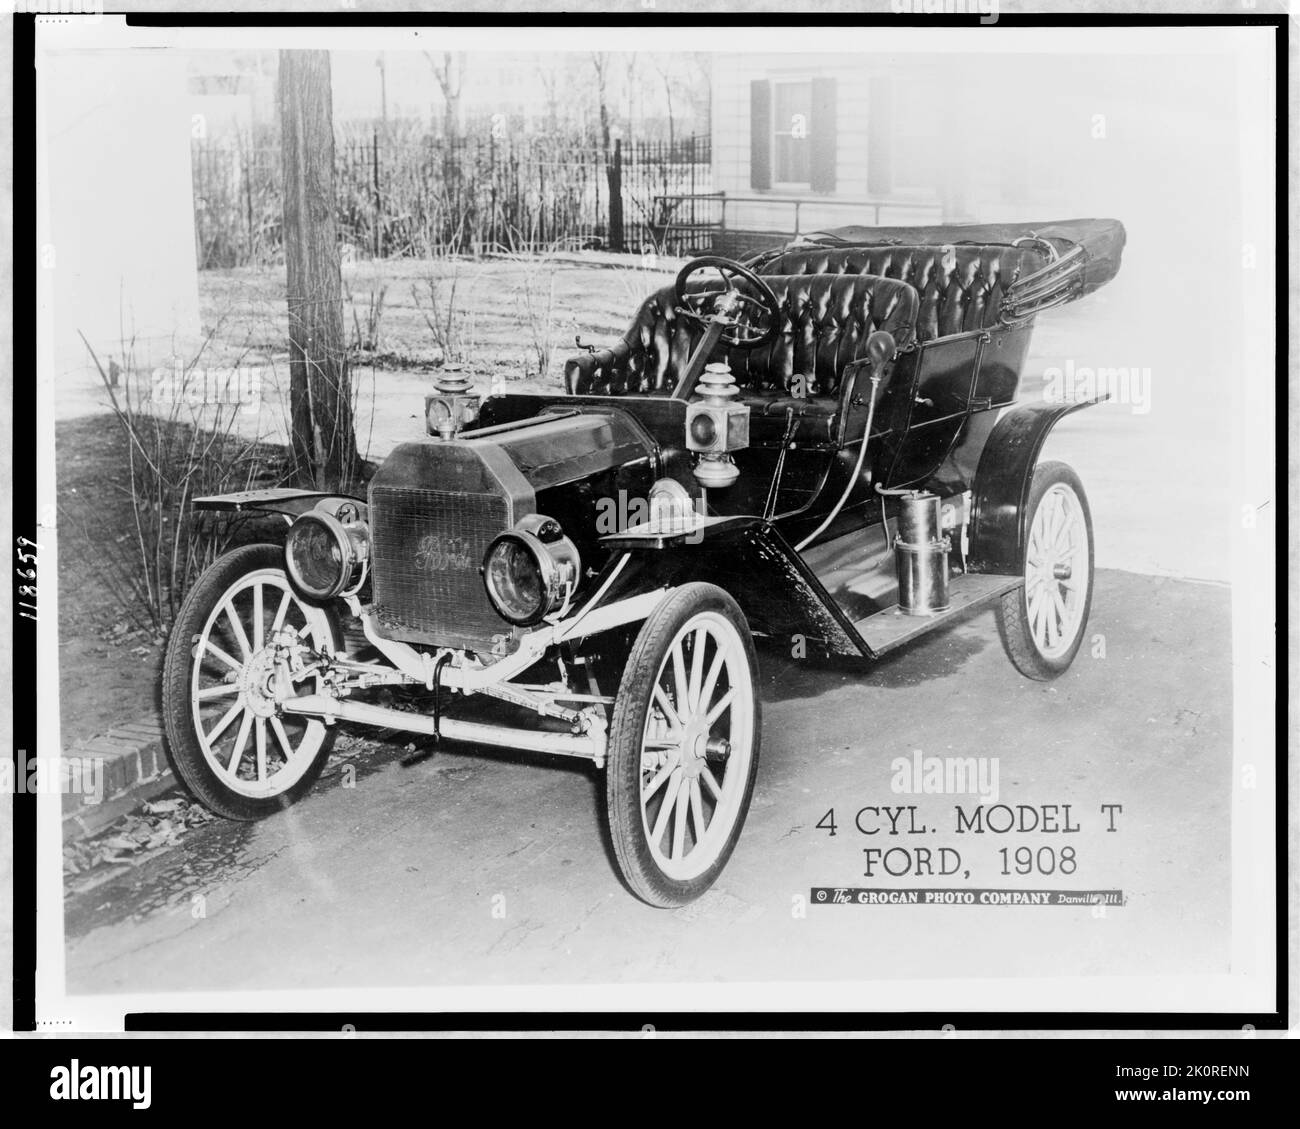 Vue de trois quarts d'un modèle 4 cylindres T Ford, Danville, il, 1908. (Photo de Grogan photo Company) Banque D'Images